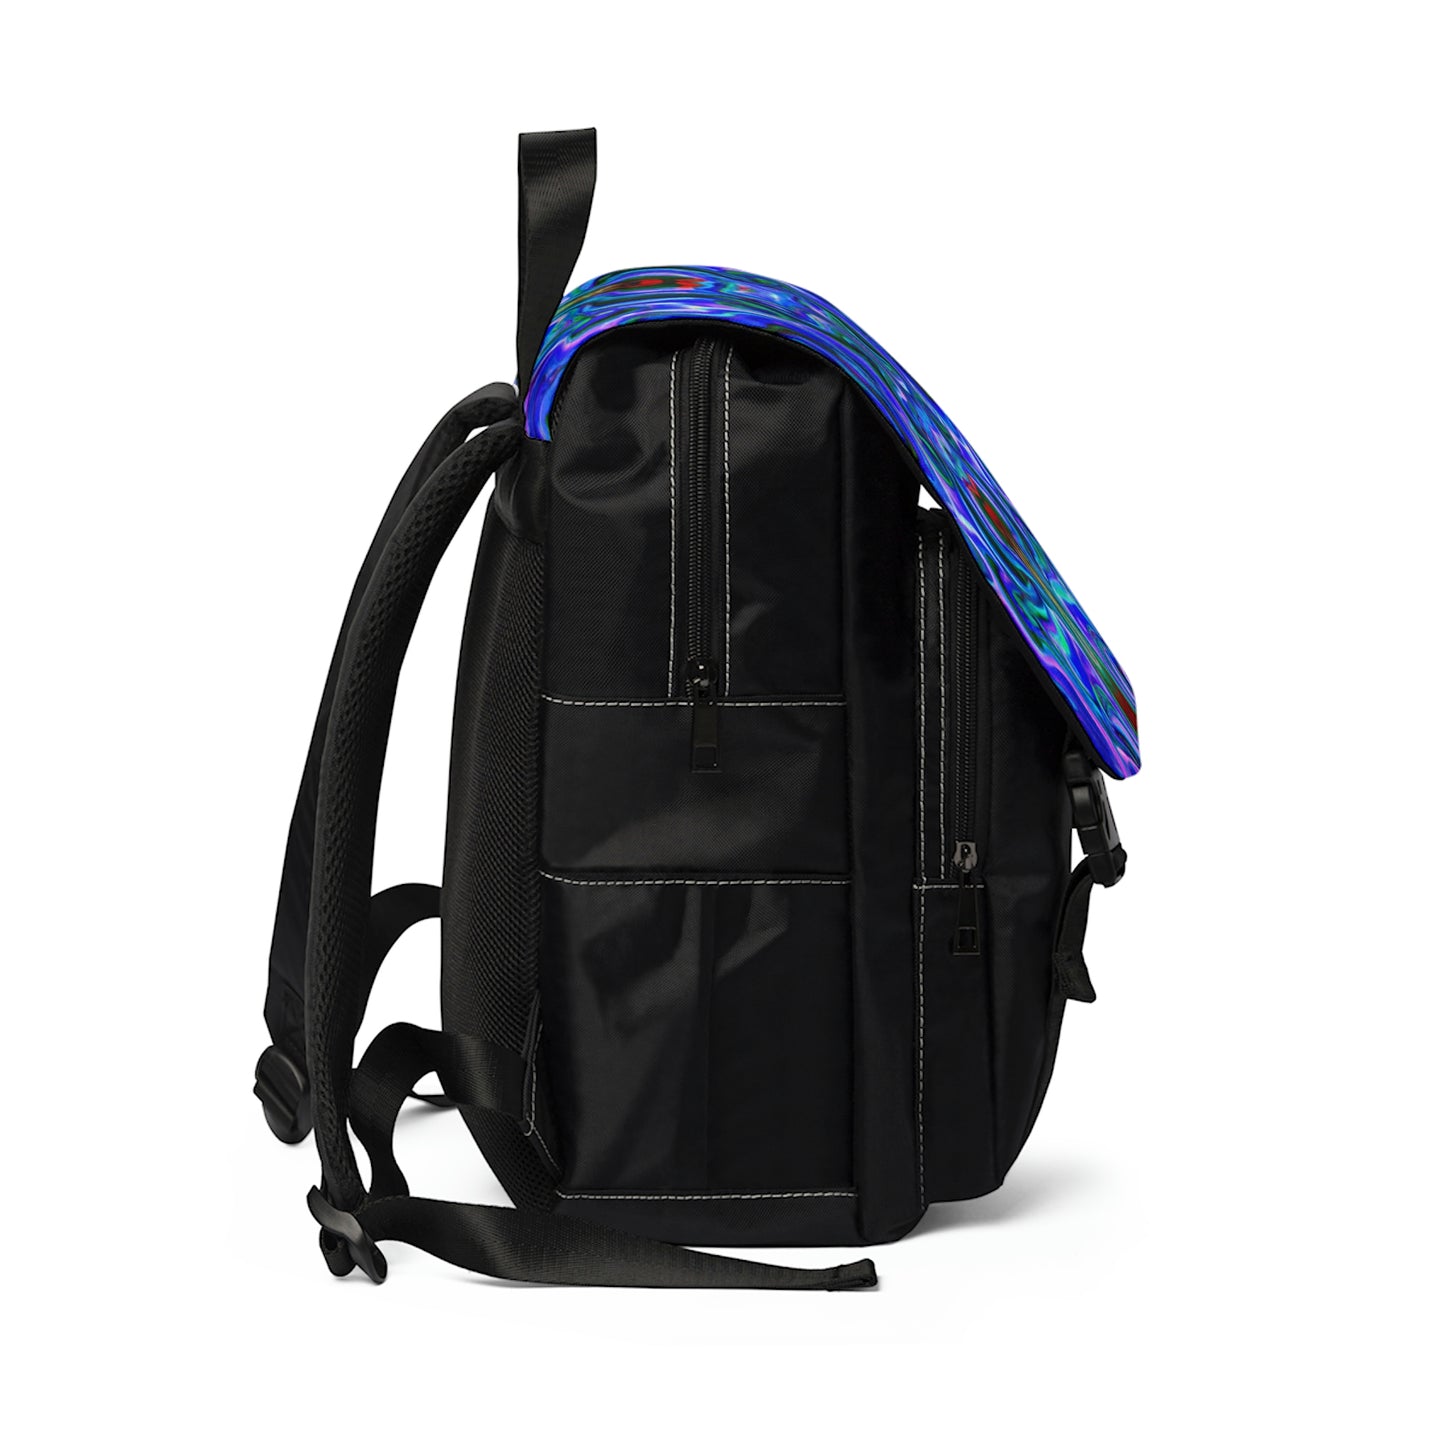 Coutenière - Psychedelic Shoulder Travel Backpack Bag